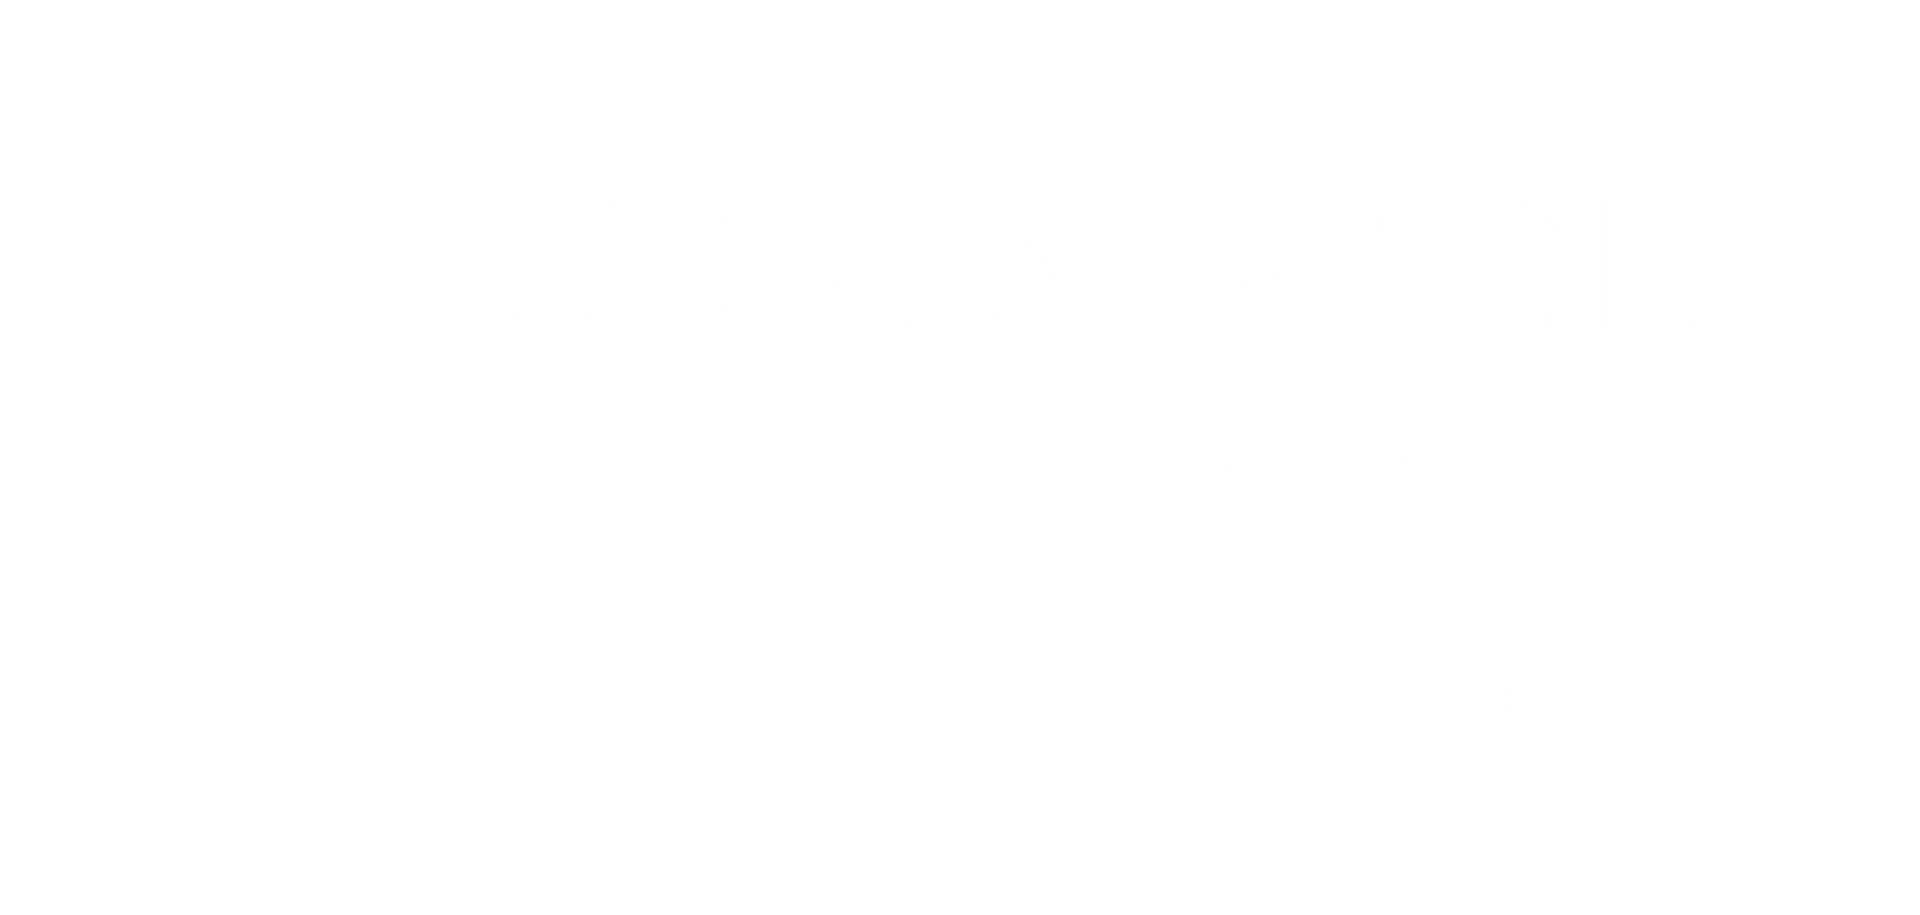 Lincoln Park Flats White